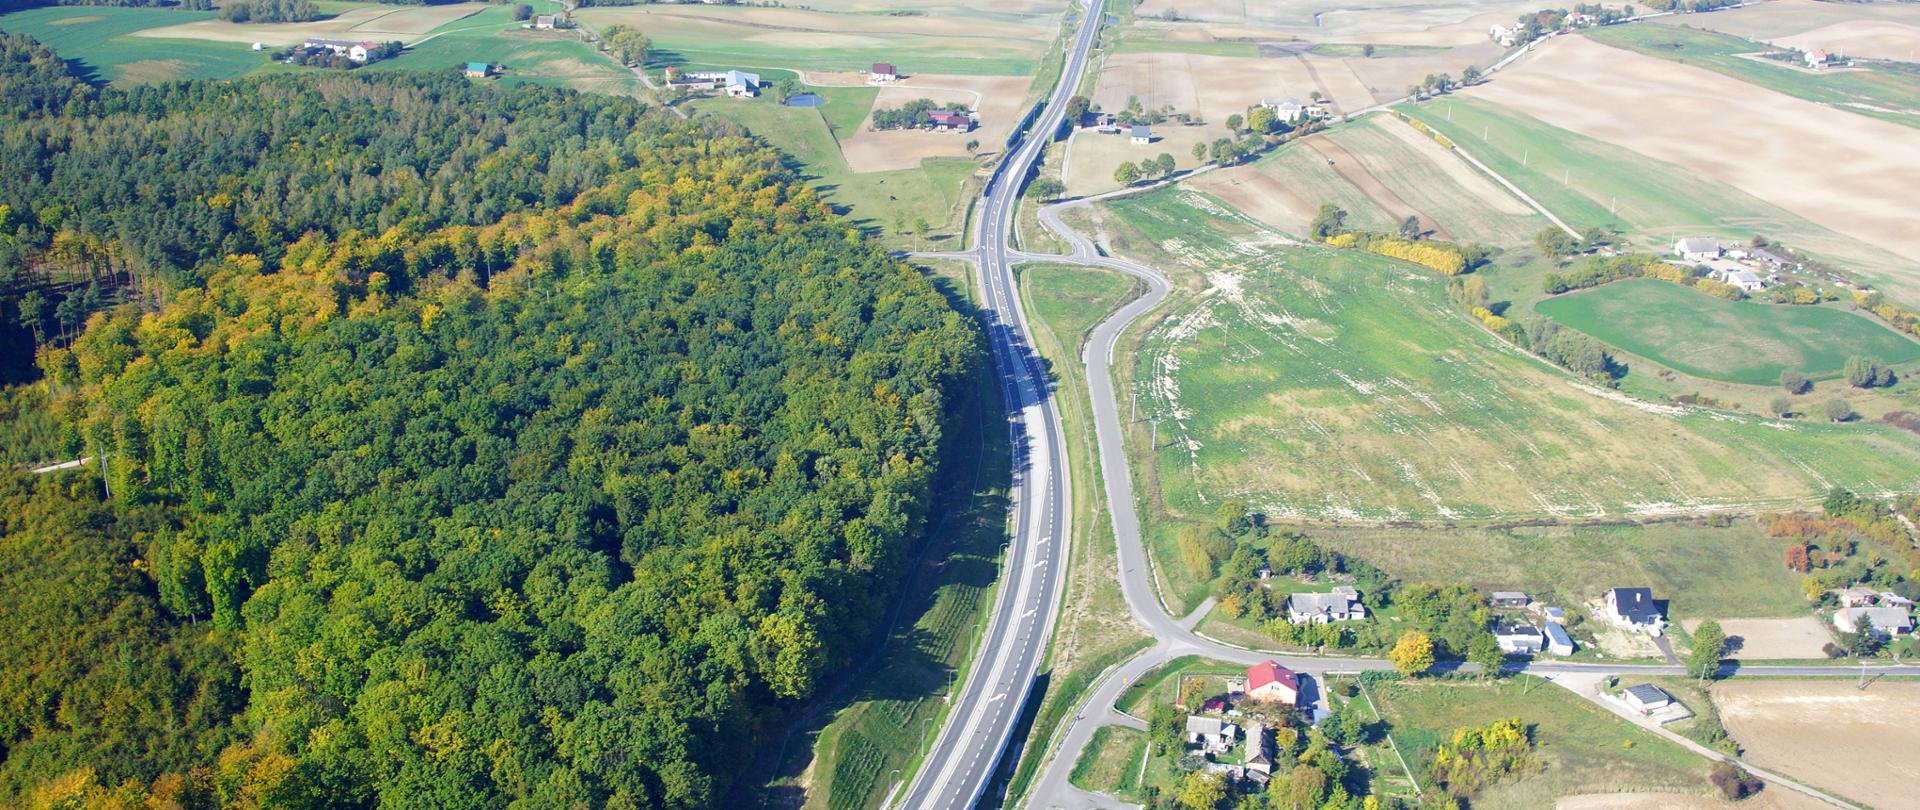 Zdjęcie przedstawia widok z lotu ptaka na drogę krajową obok drogi po lewej stronie las po prawej krajobraz rolniczy z zabudowaniami miejscowości.